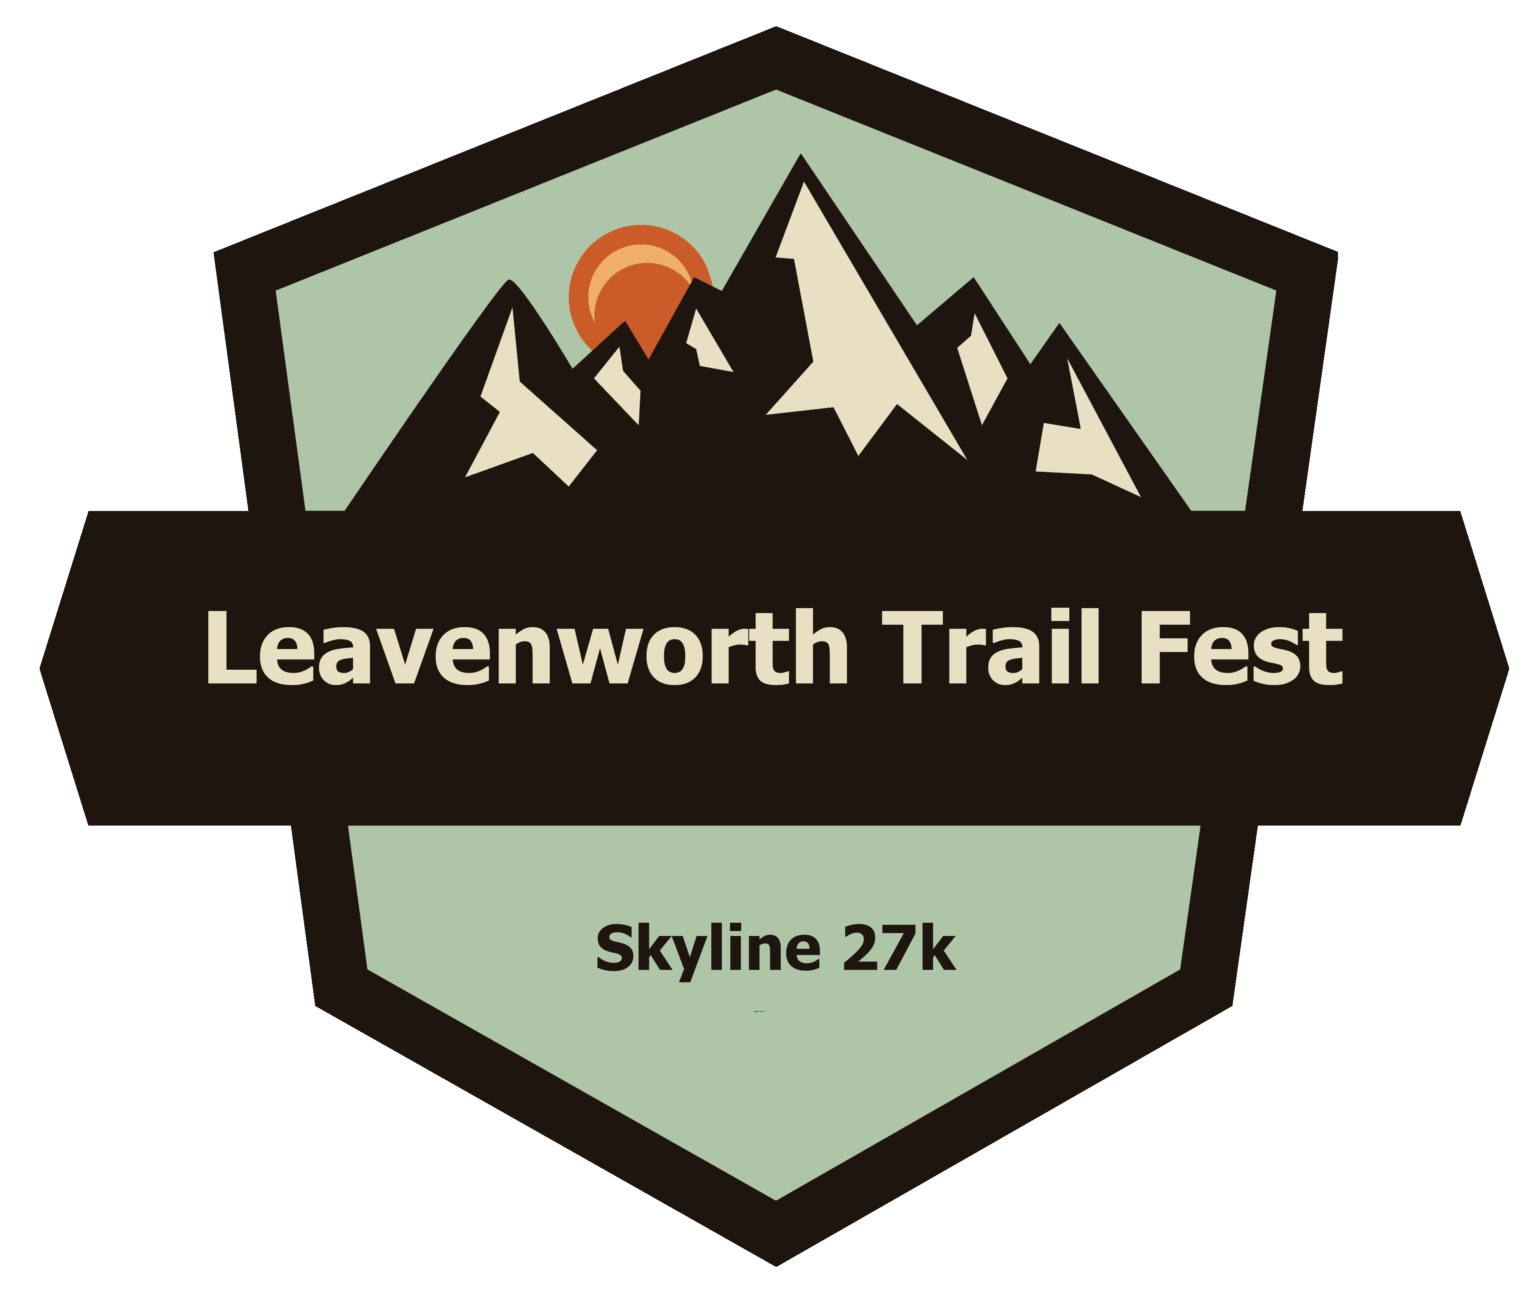 Leavenworth Skyline 27k - Leavenworth Trail Fest